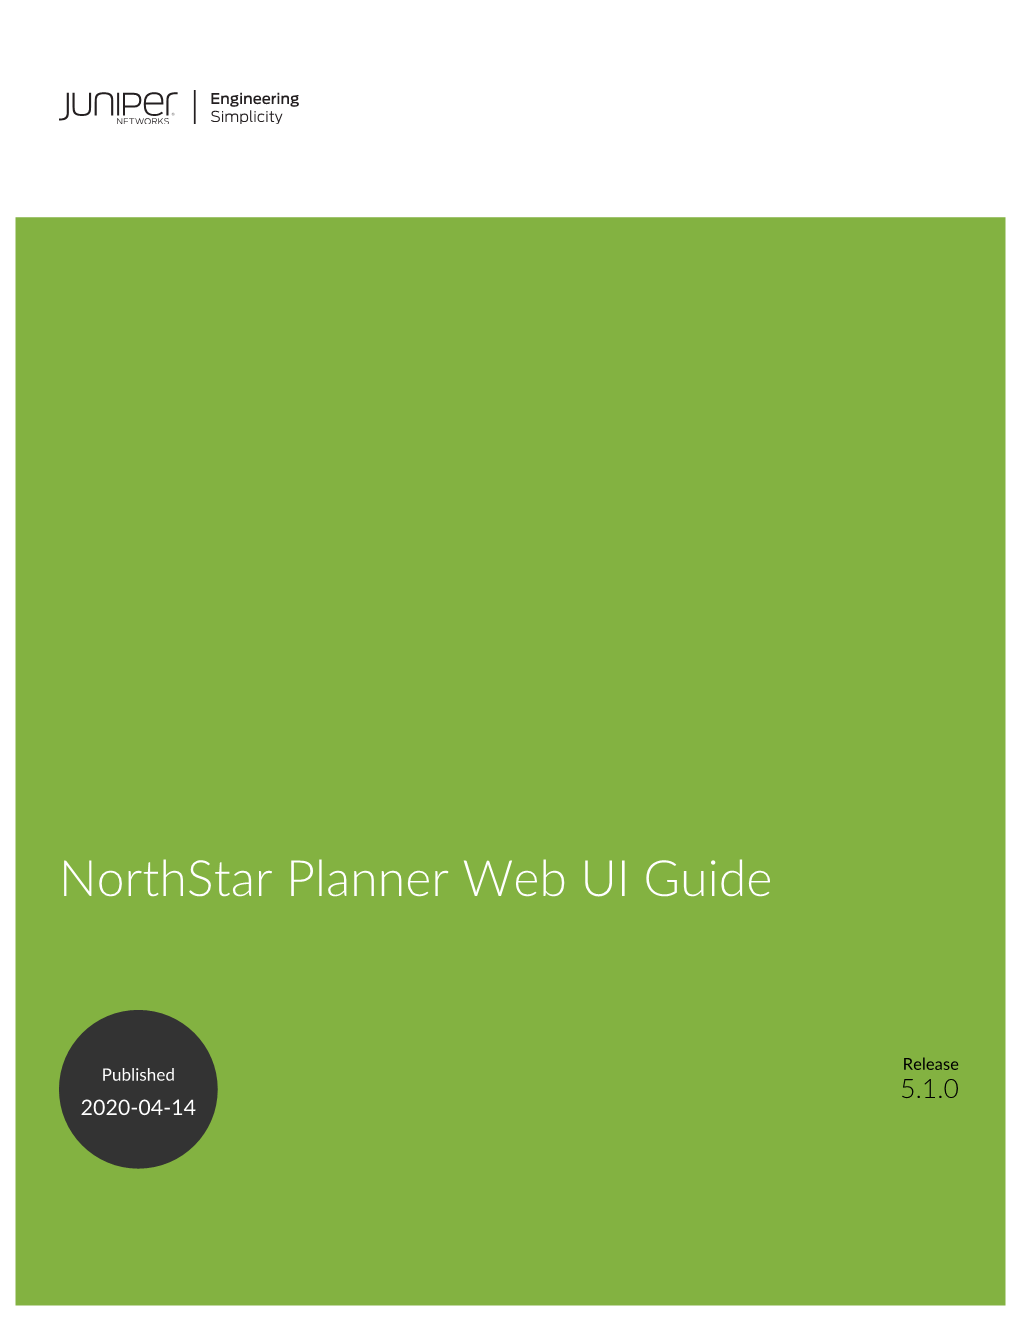 Northstar Planner Web UI Guide